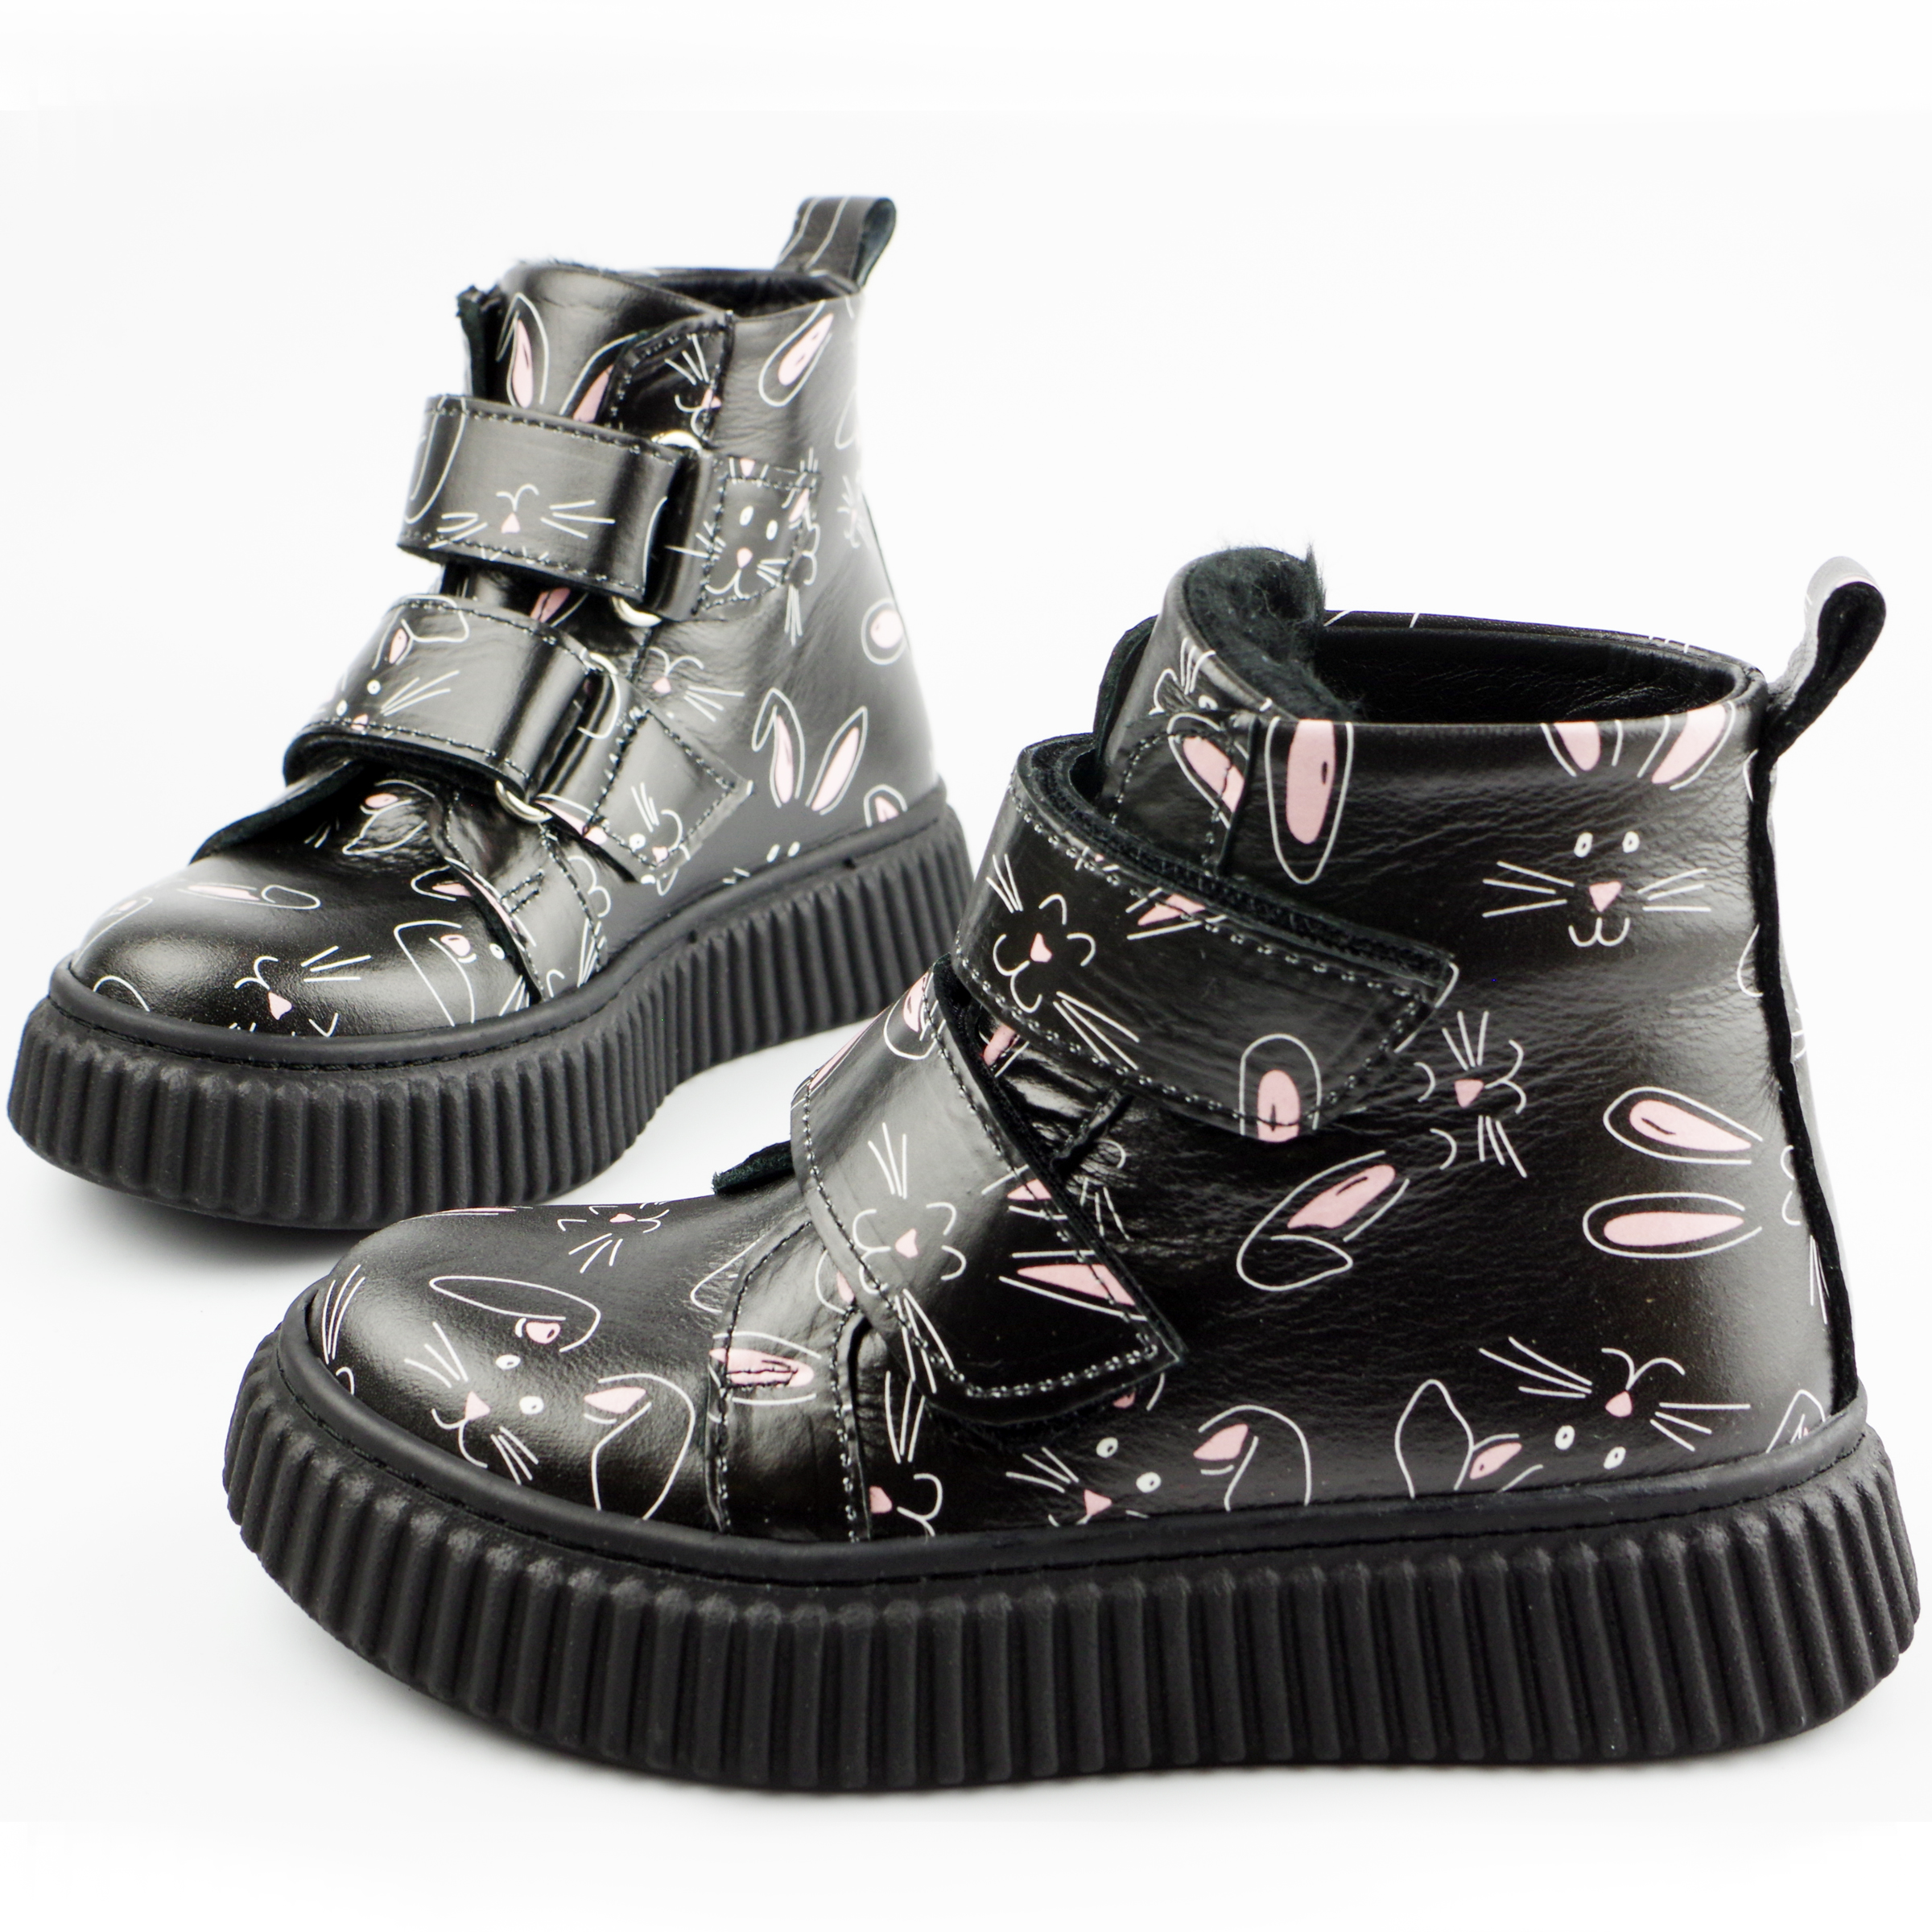 Демісезонні черевики Зайчата (2121) для дівчинки, матеріал Натуральна шкіра, Чорний колір, 26-30 розміри – Sole Kids. Фото 3